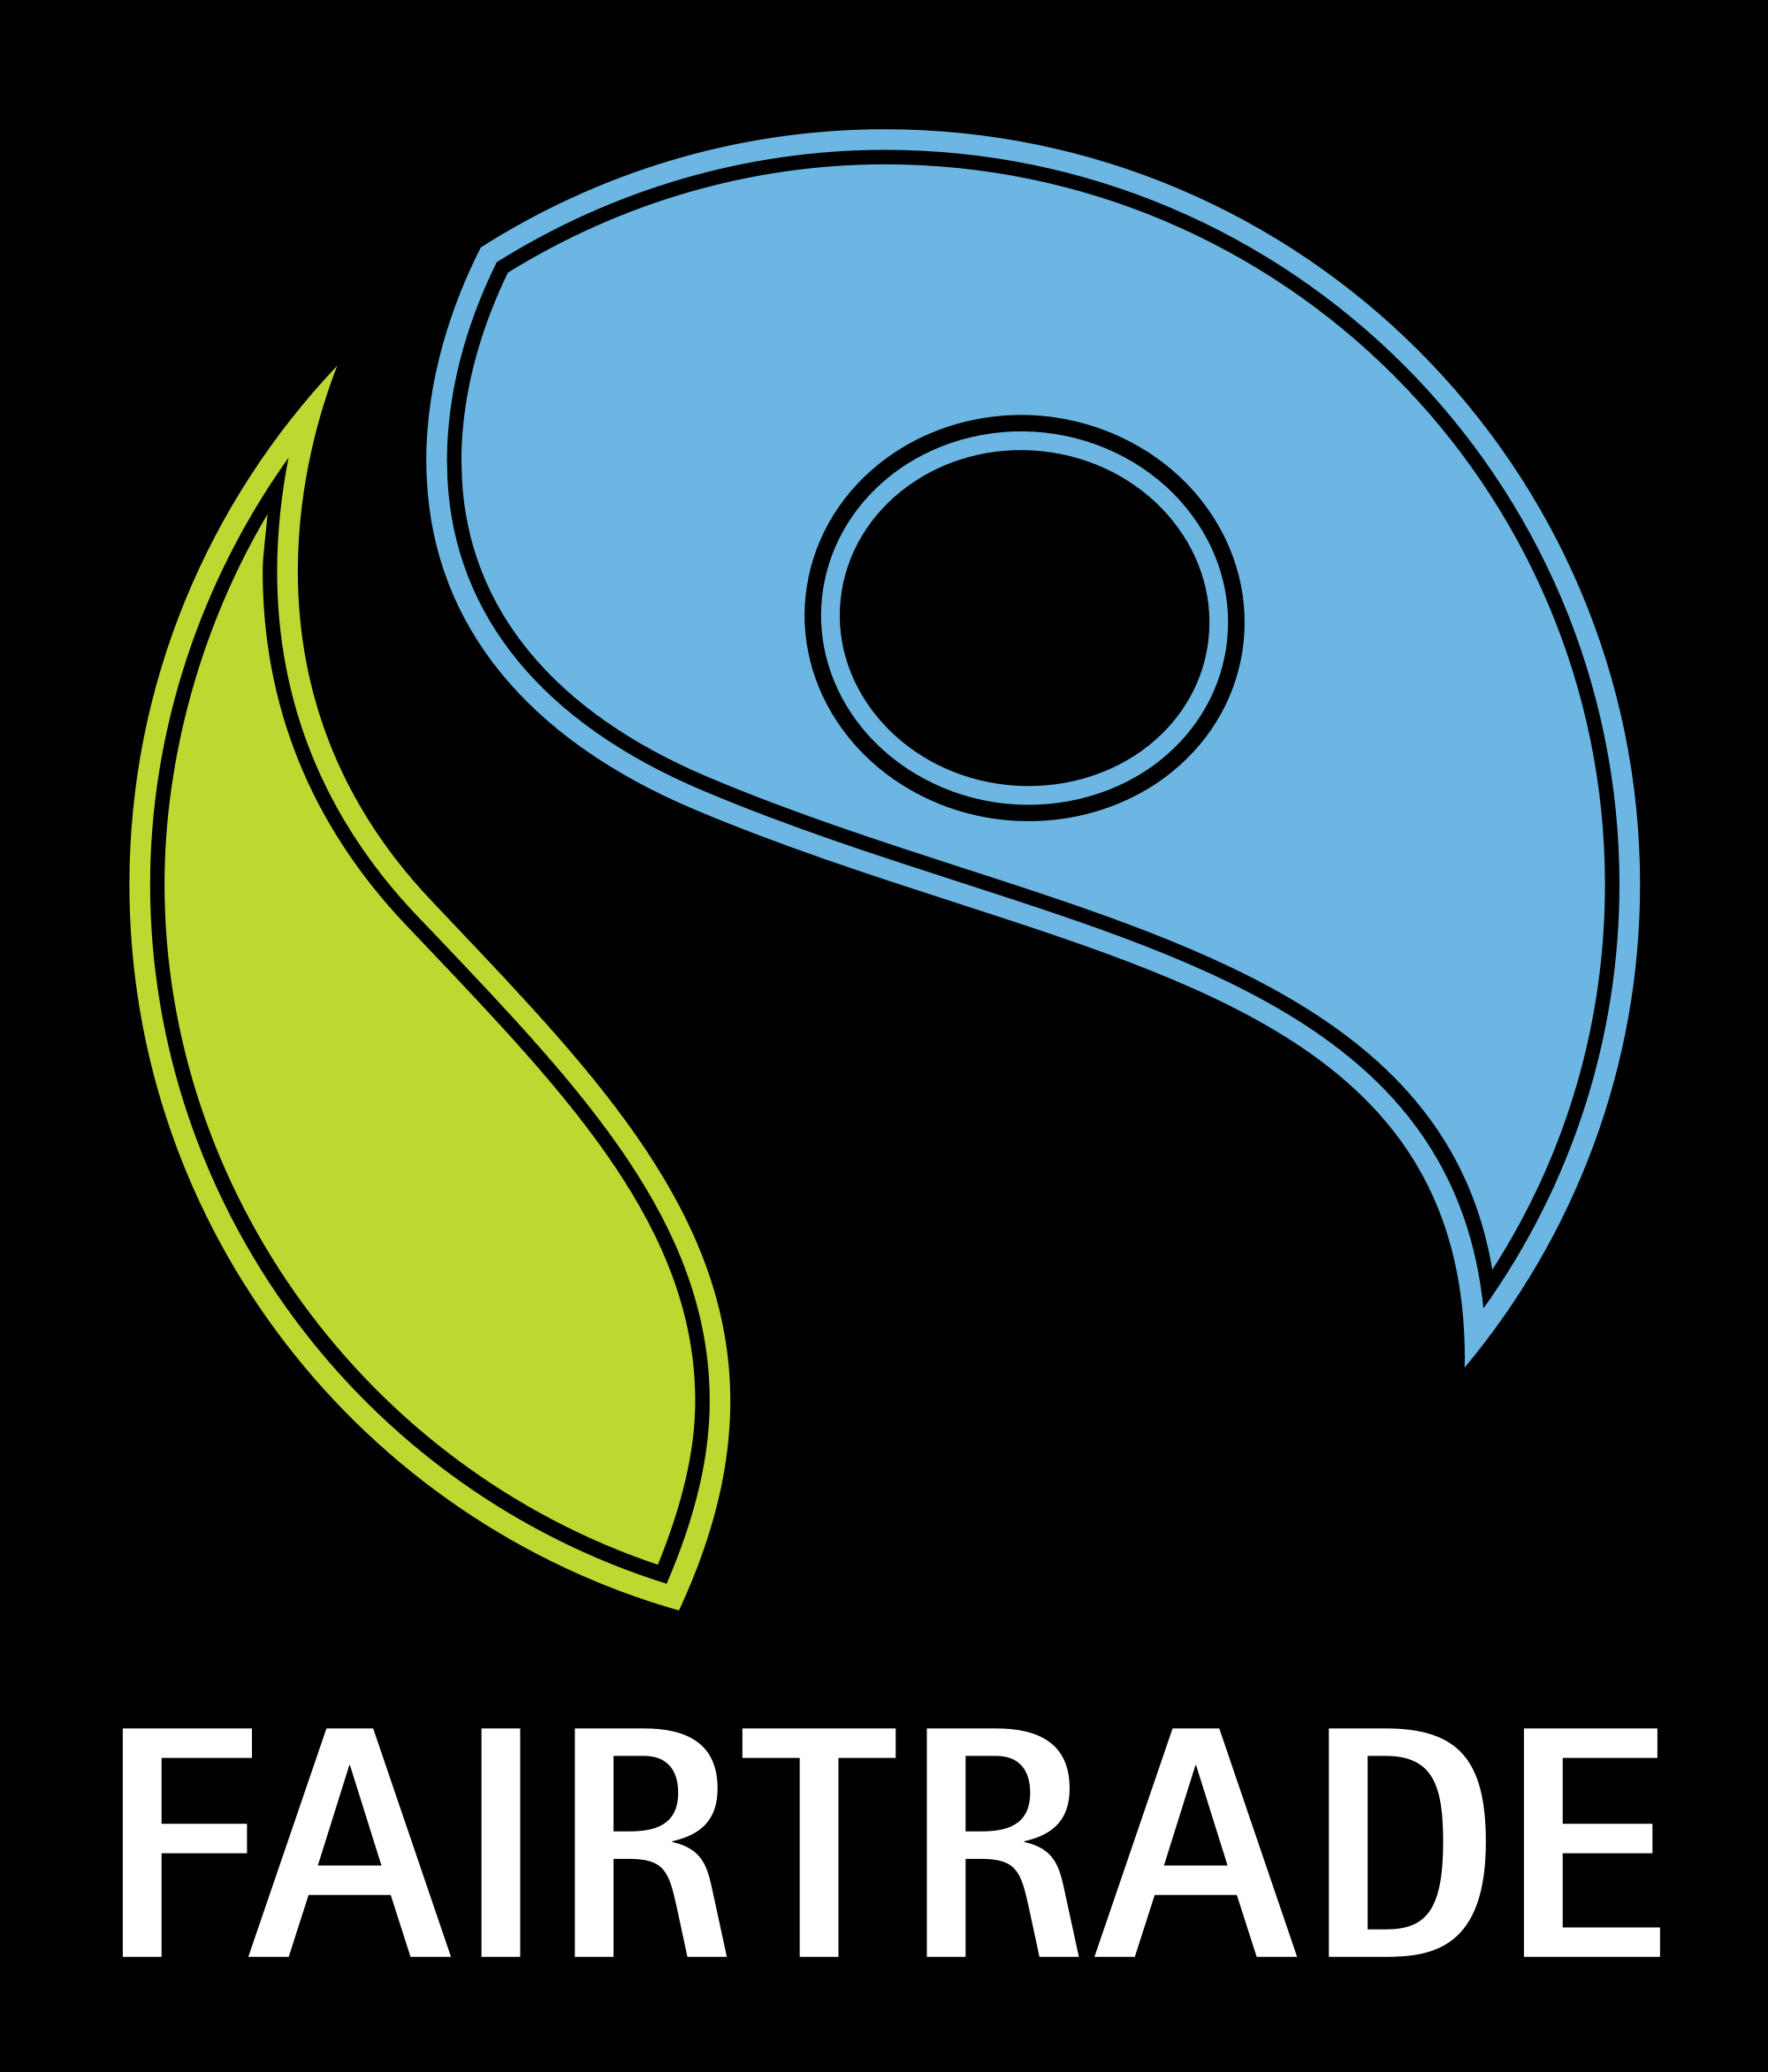 Debat scholieren over Fairtrade